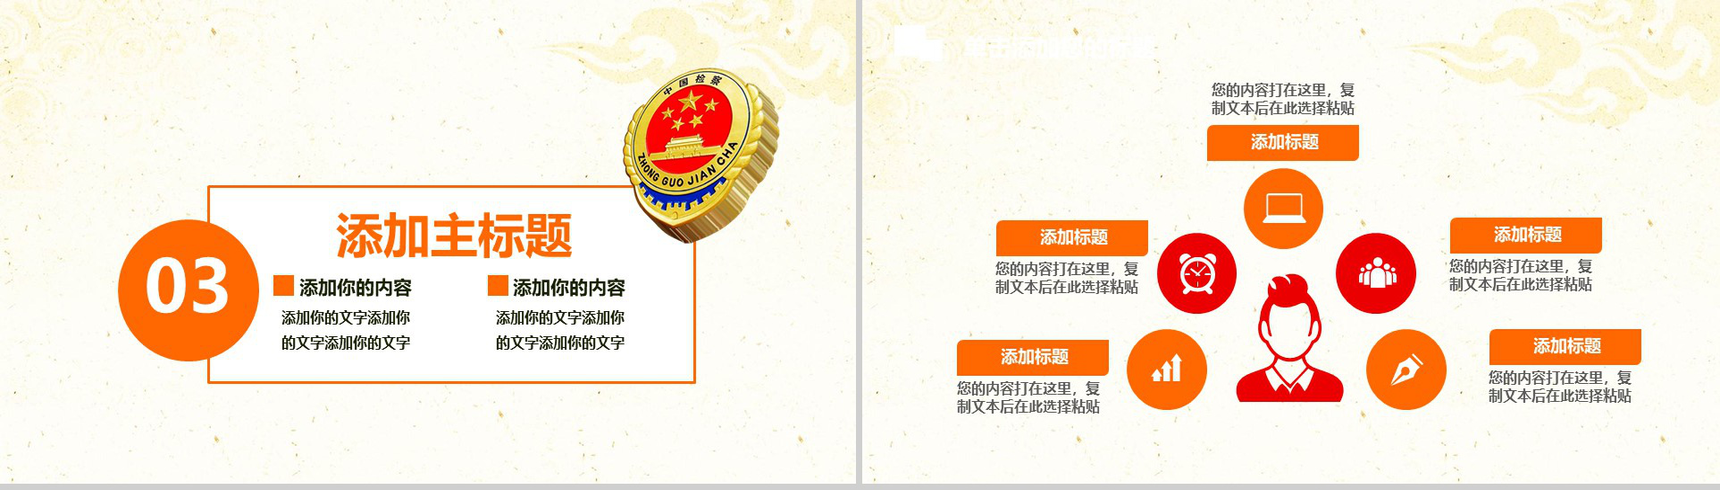 中国检察院汇报会议动态PPT模板-7